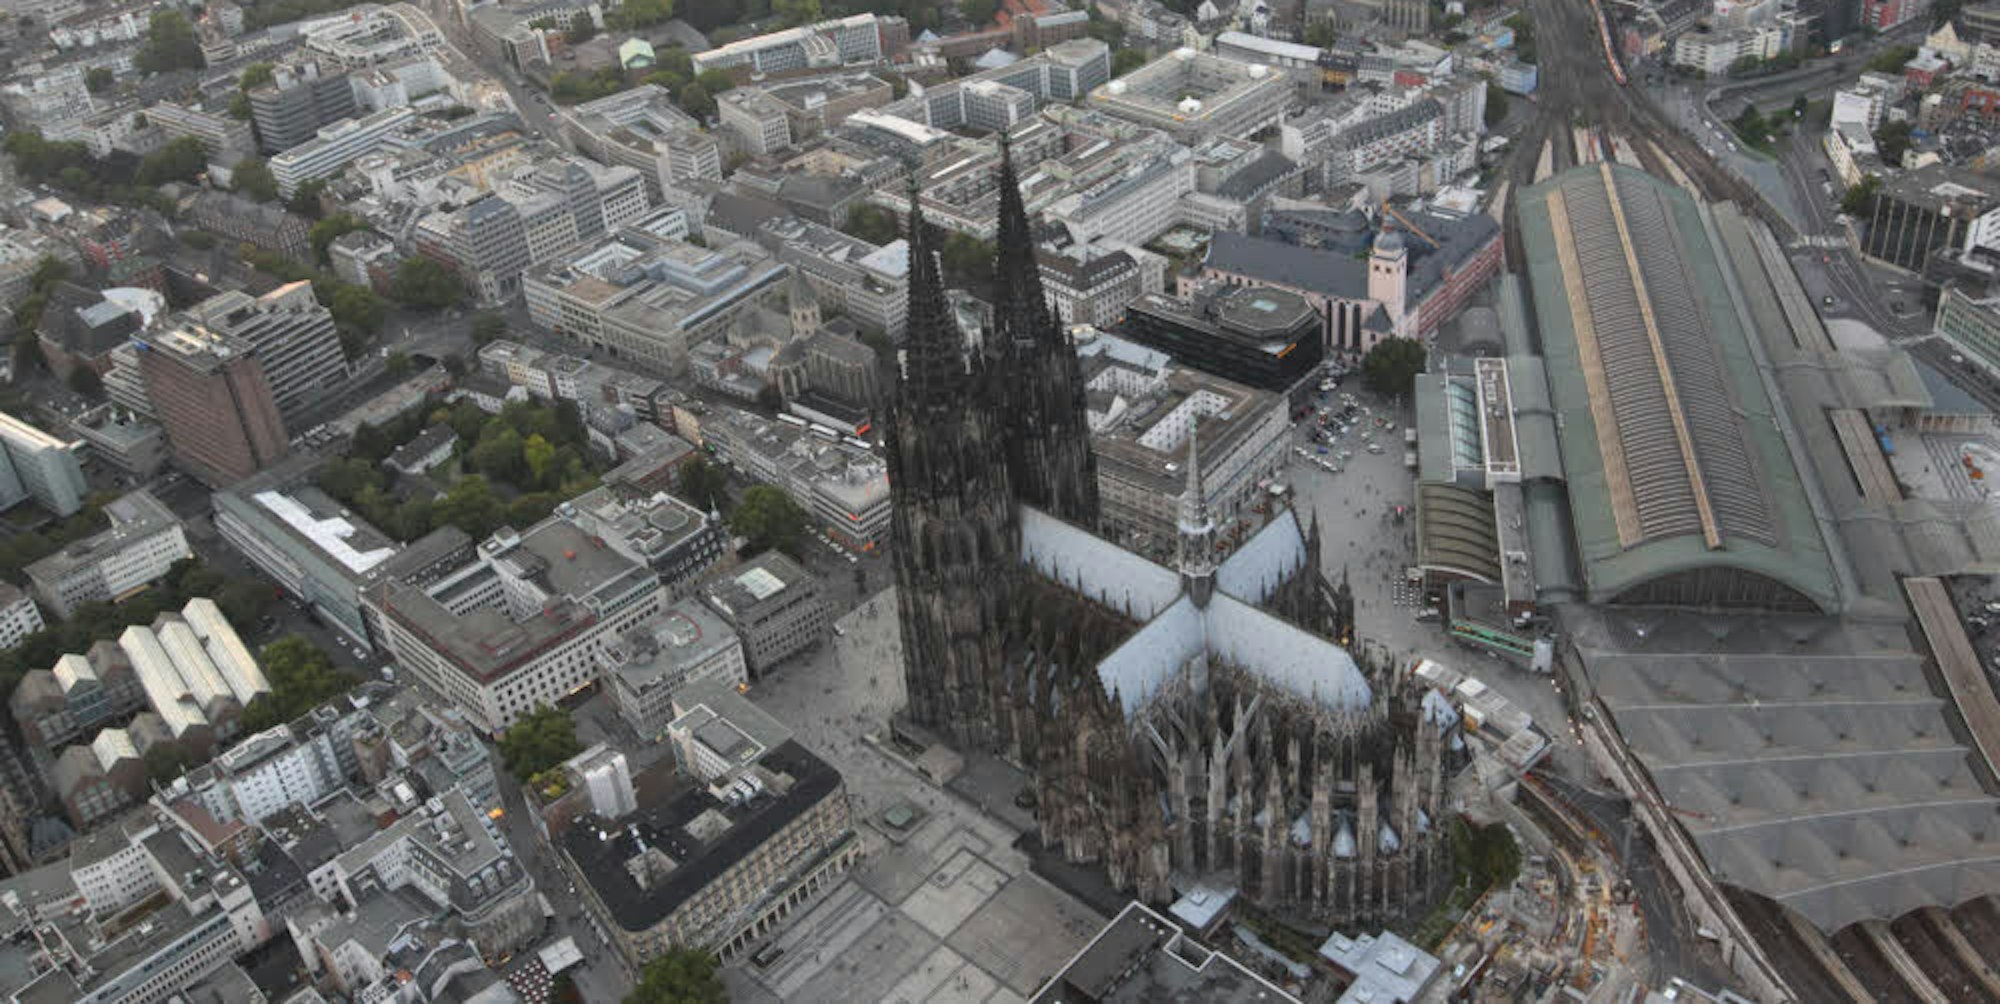 Köln ist ein attraktives Touristenziel.